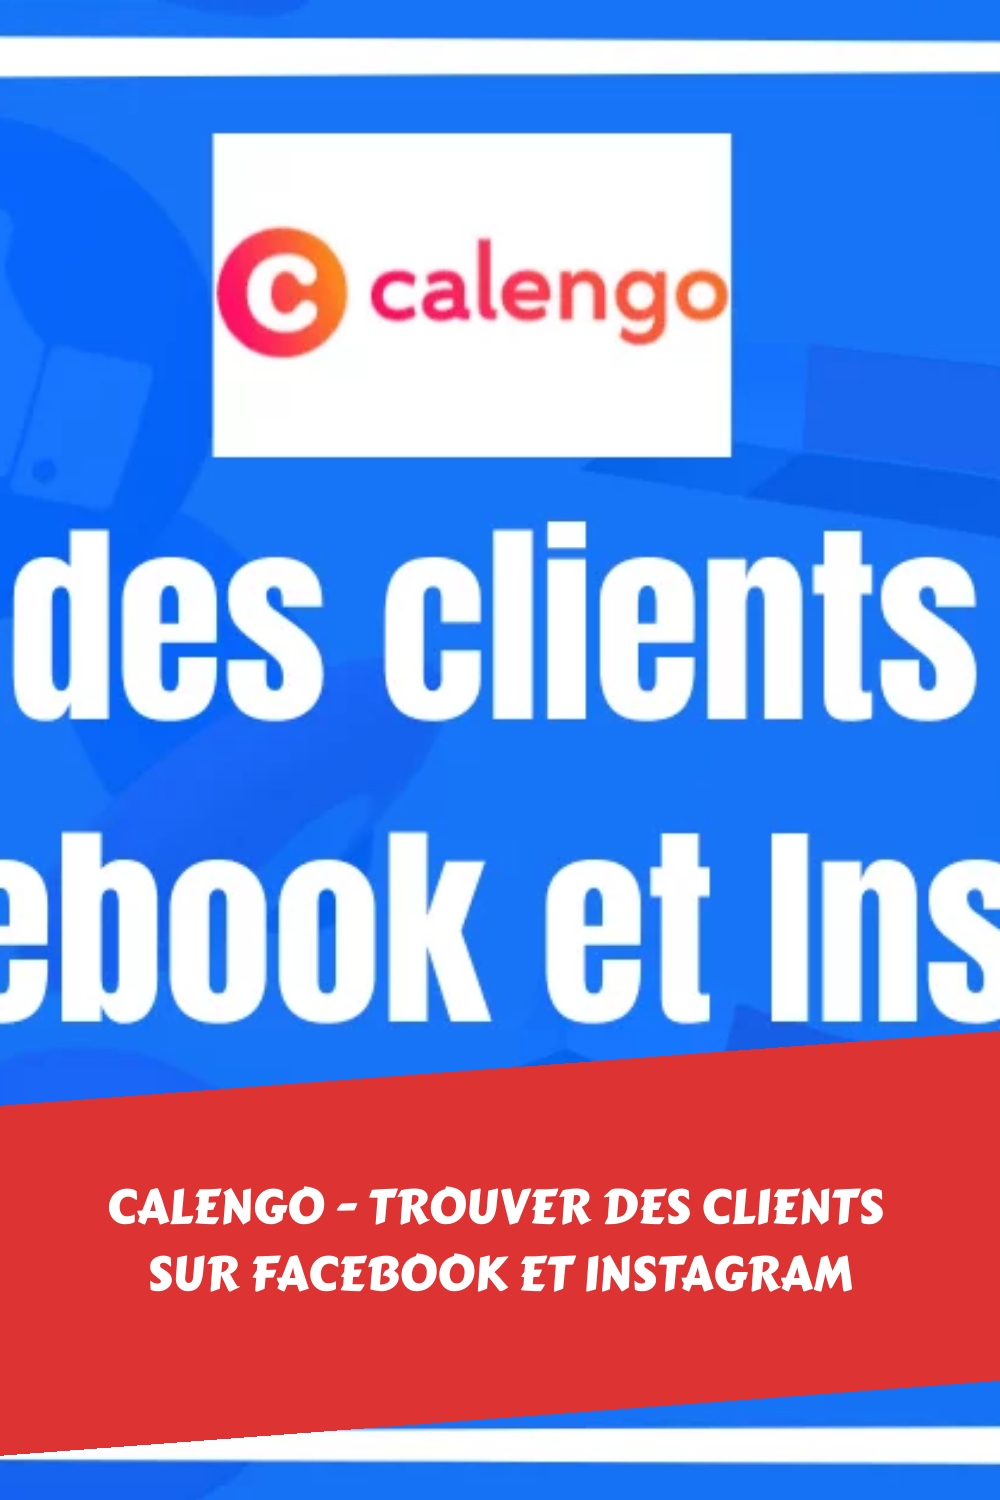 Calengo - Trouver des clients sur Facebook et Instagram